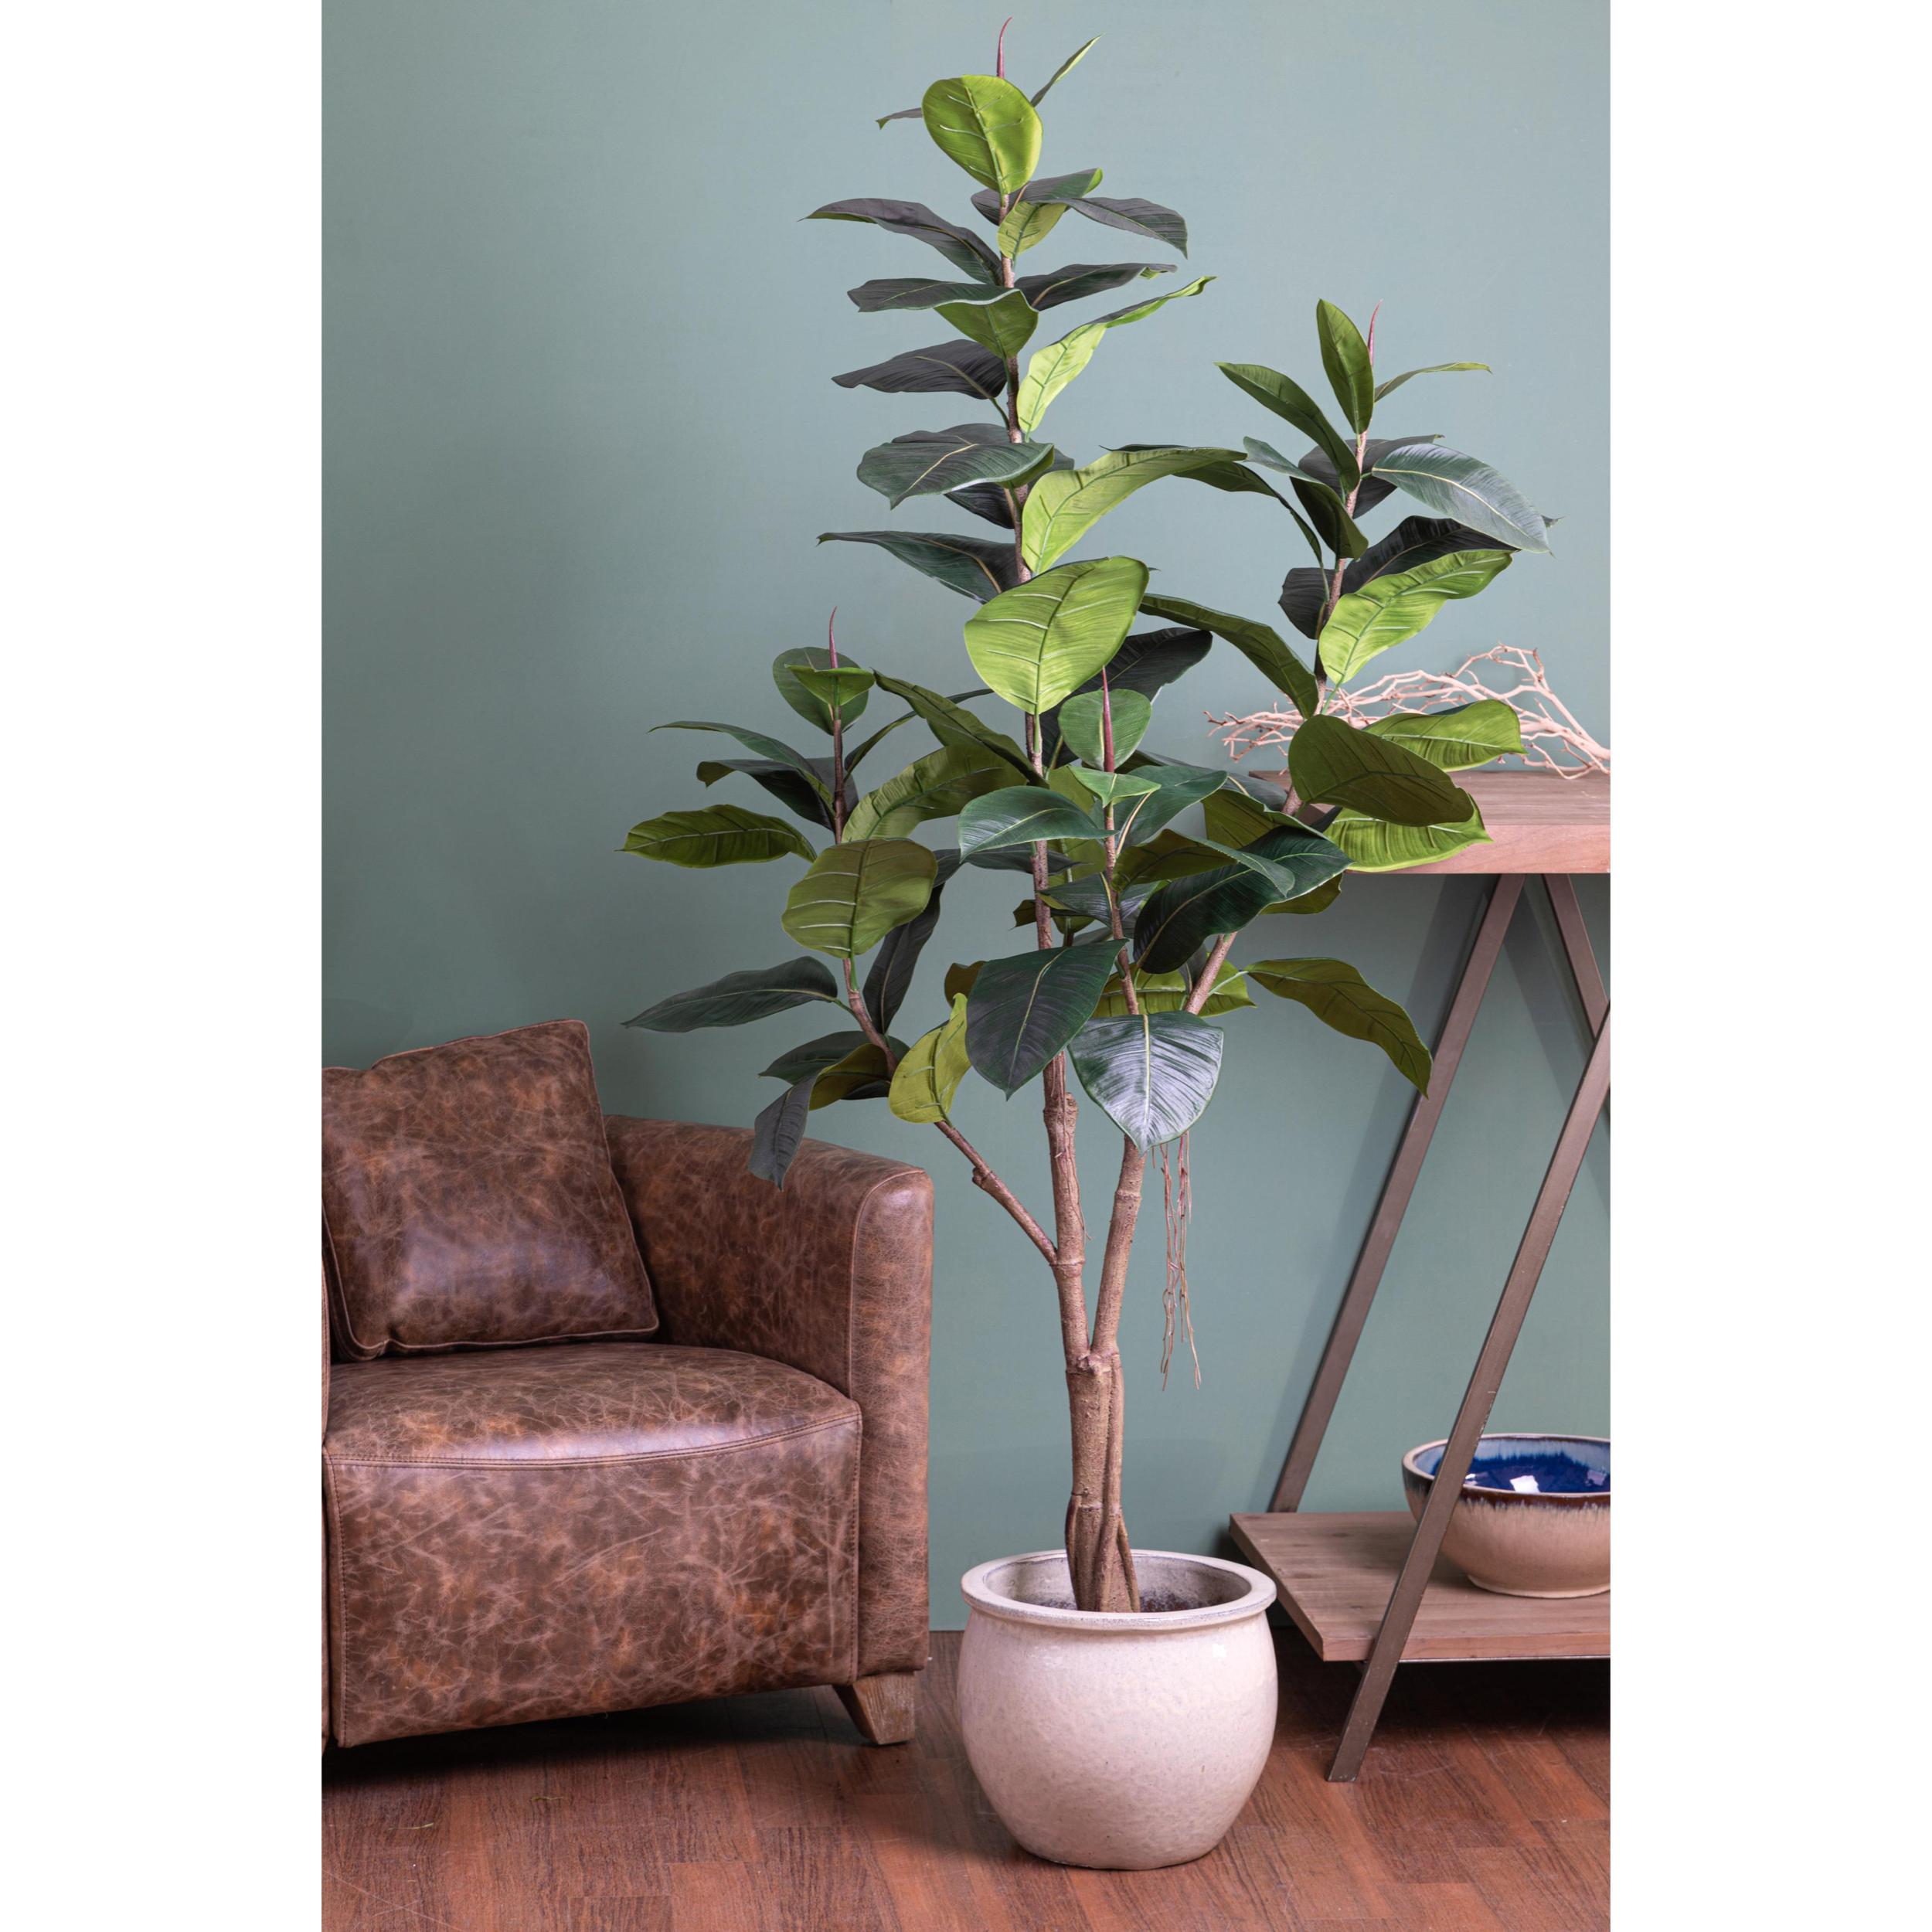 Ficus Rubber Con 65 Foglie. Altezza 180 Cm - Pezzi 1 - 35X180X35cm - Colore: Verde - Bianchi Dino - Piante Artificiali